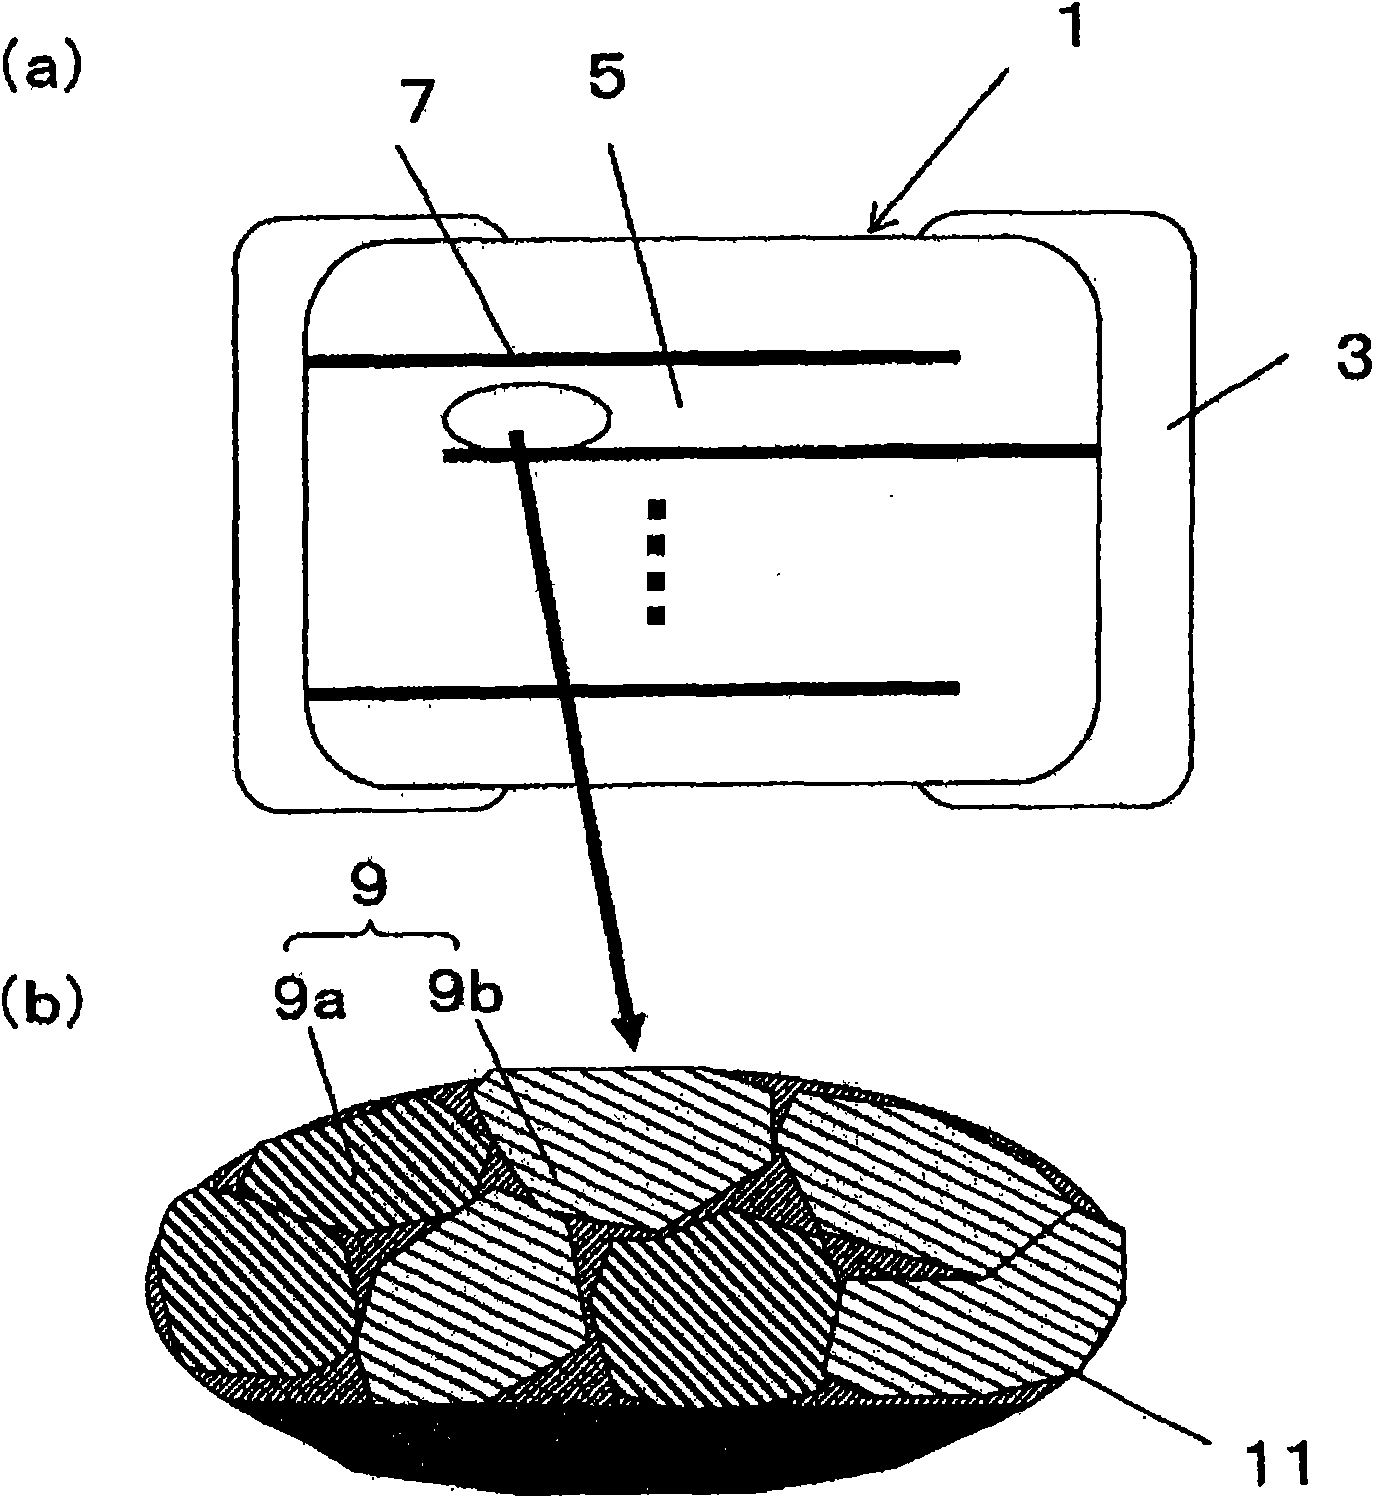 Multilayered ceramic capacitor